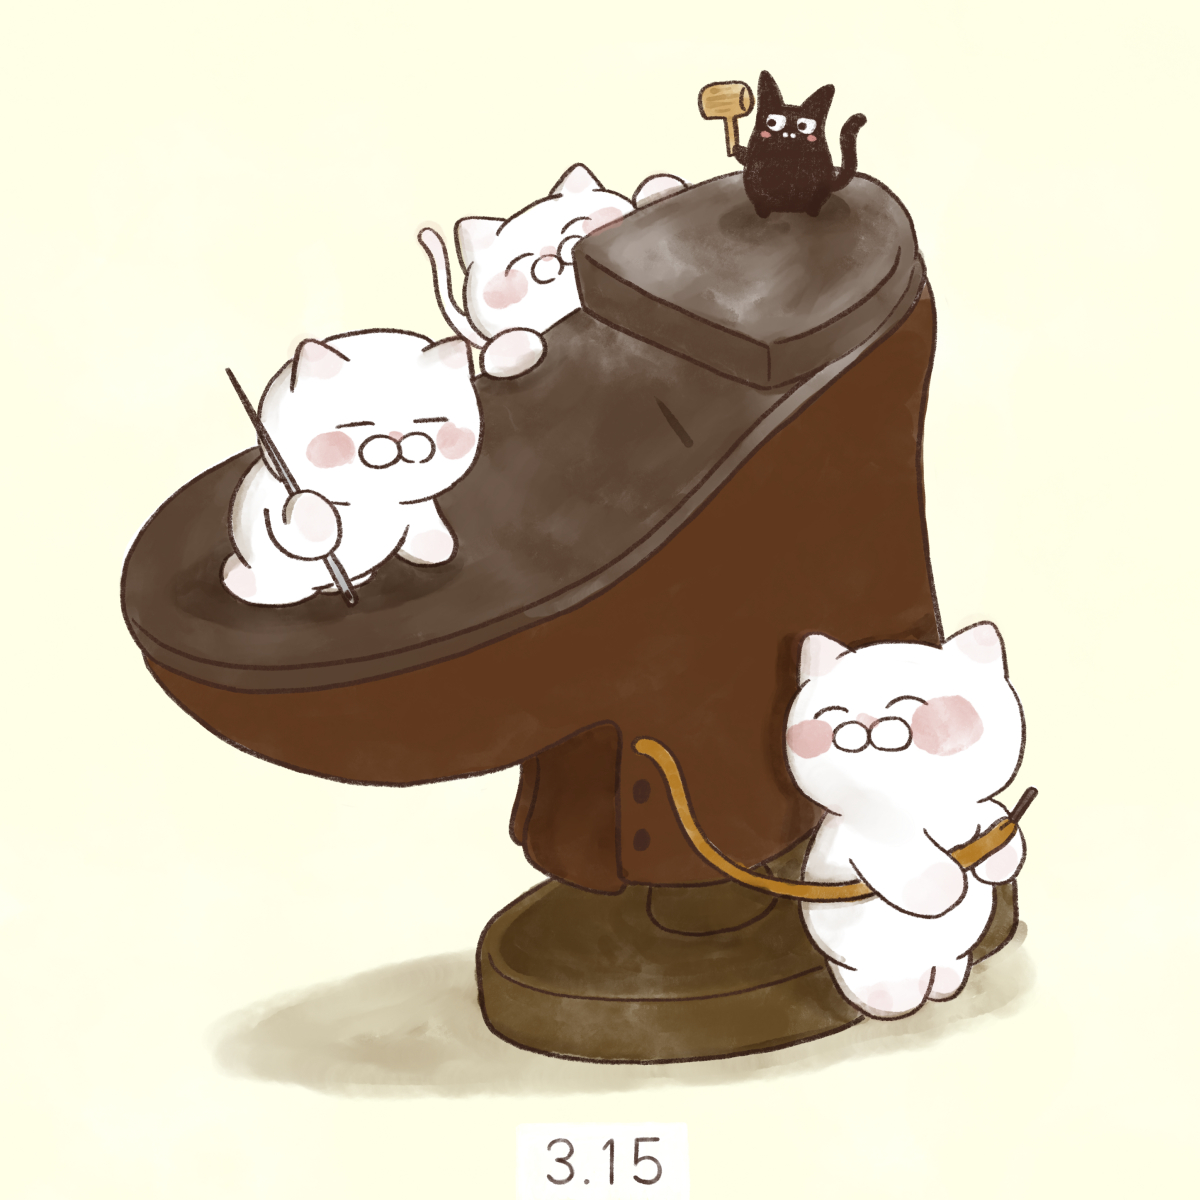 「3月15日【靴の記念日】
明治3年(1870年)旧暦3月15日、西村勝三が築地に」|大和猫のイラスト